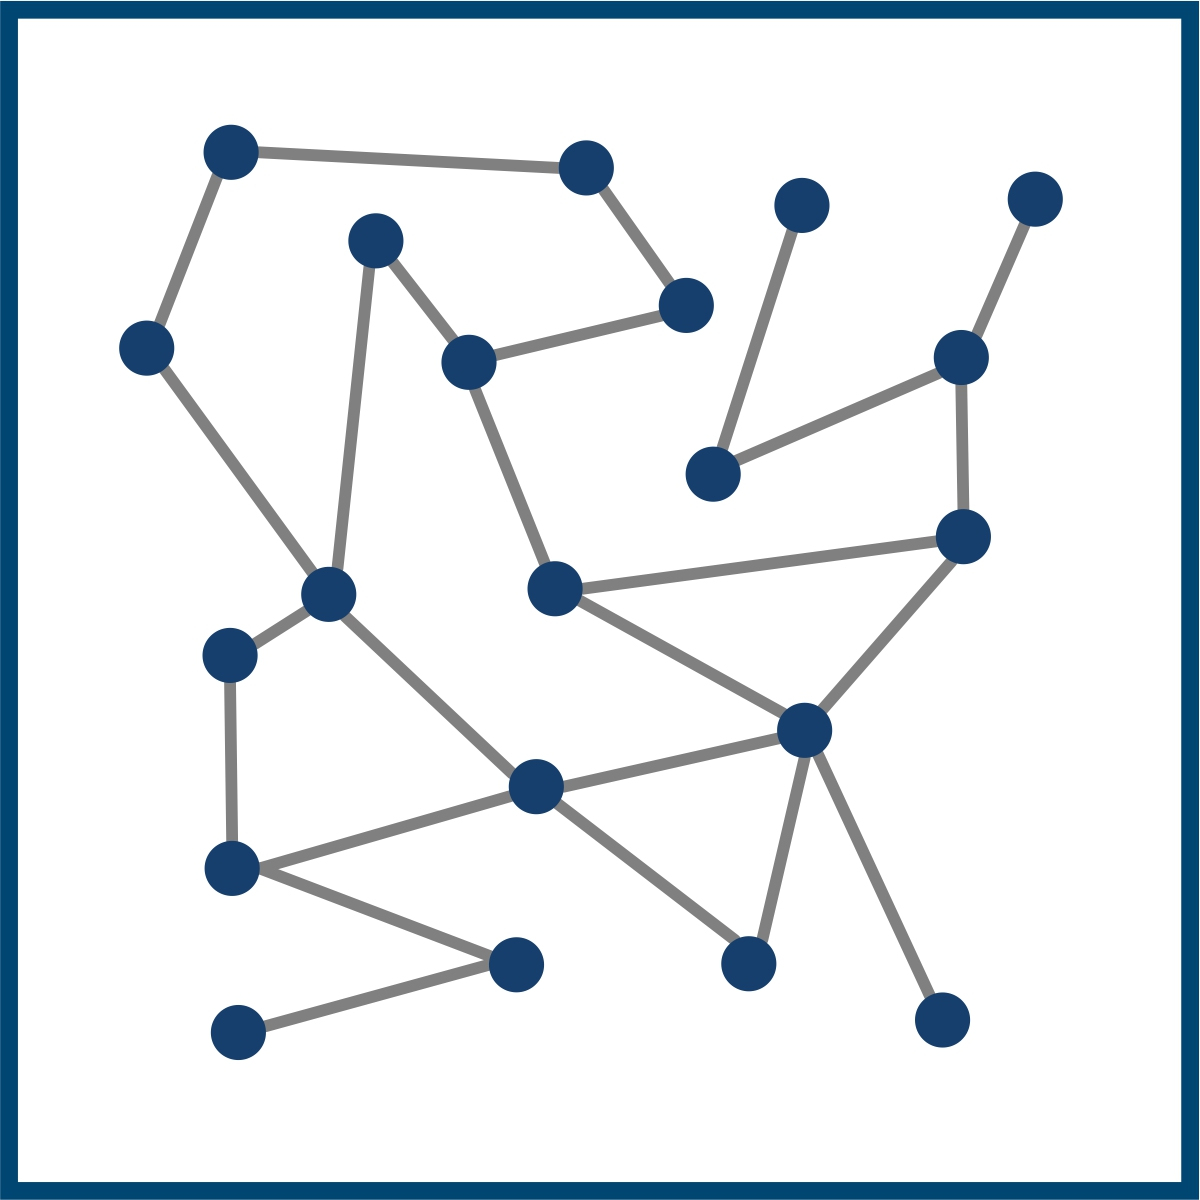 Piktogramm eines Netzwerks aus Linien